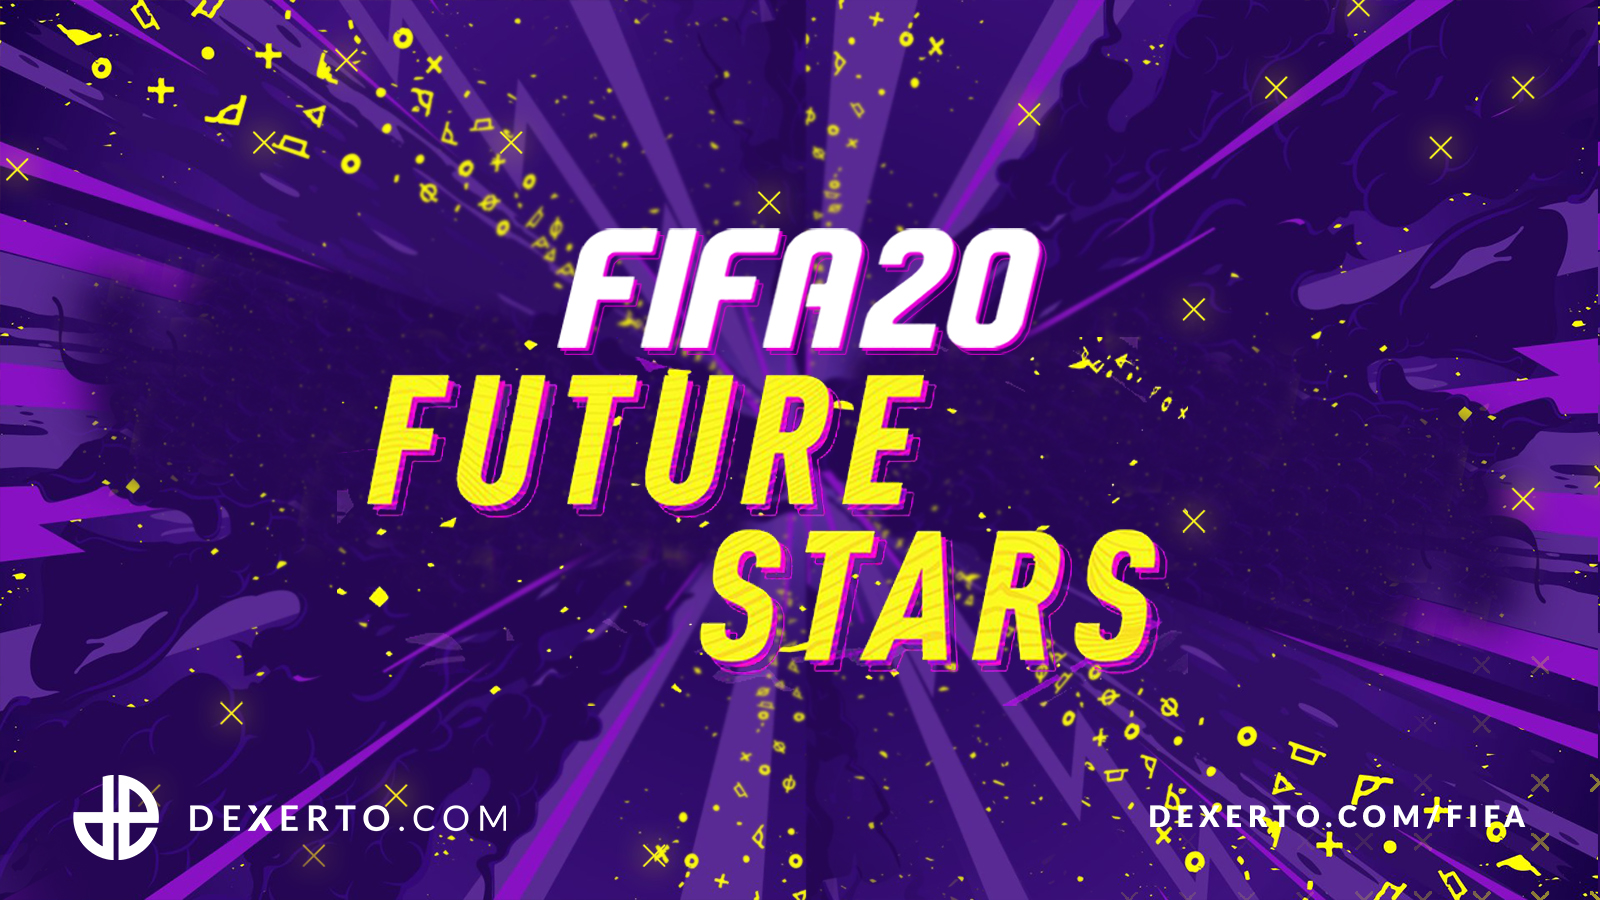 Future Stars Fifa 20 - HD Wallpaper 